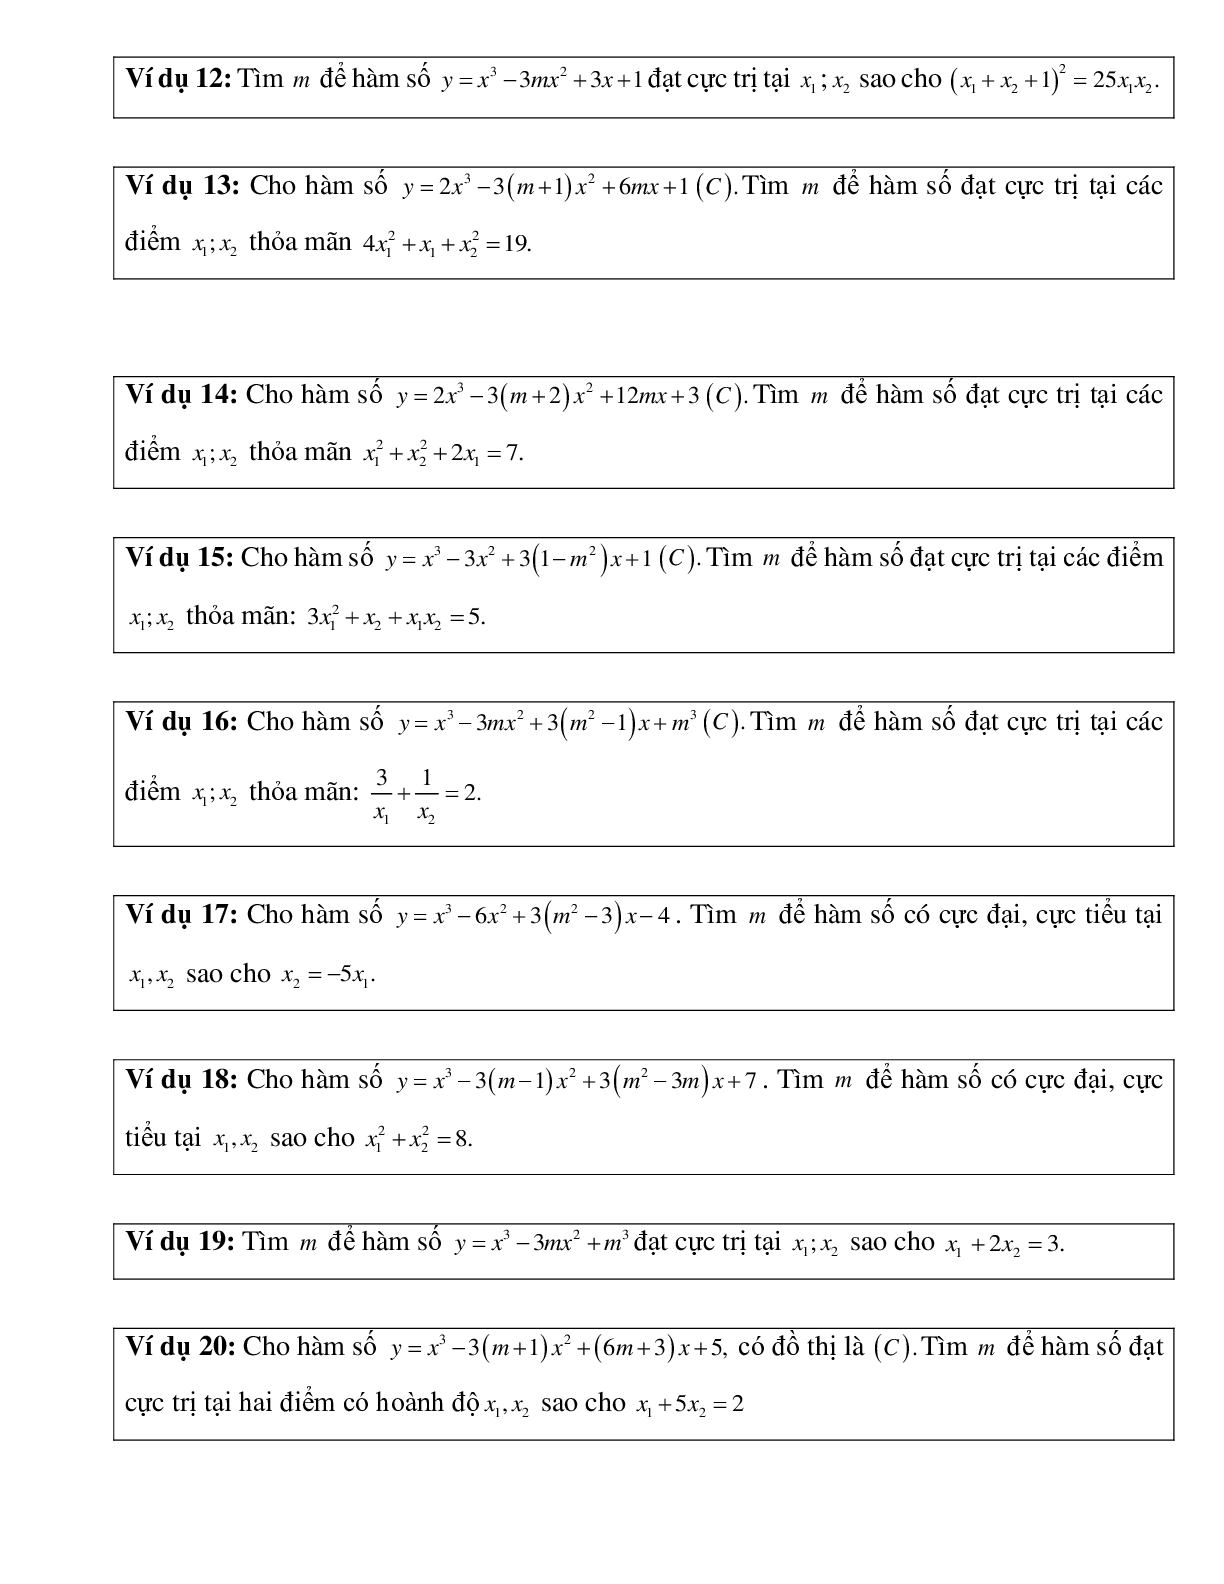 Tìm M để đồ thị hàm số đạt cực trị tại các điểm A,B thỏa mãn điều kiện cho trước (trang 3)